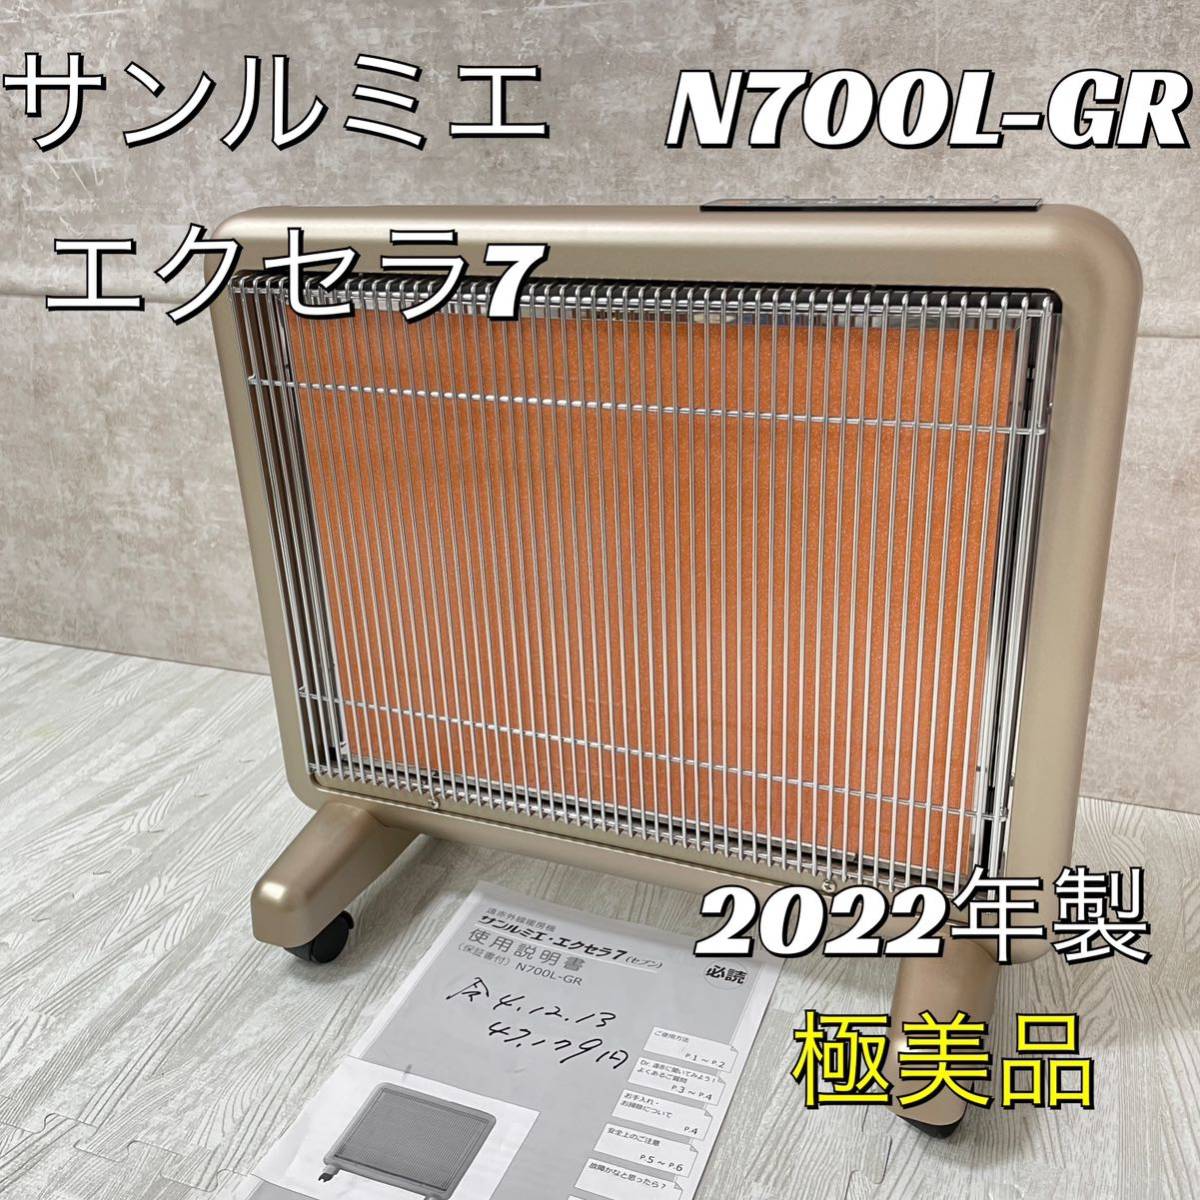 【2022年製】サンルミエ 遠赤外線暖房器 エクセラ7 N700L-GR